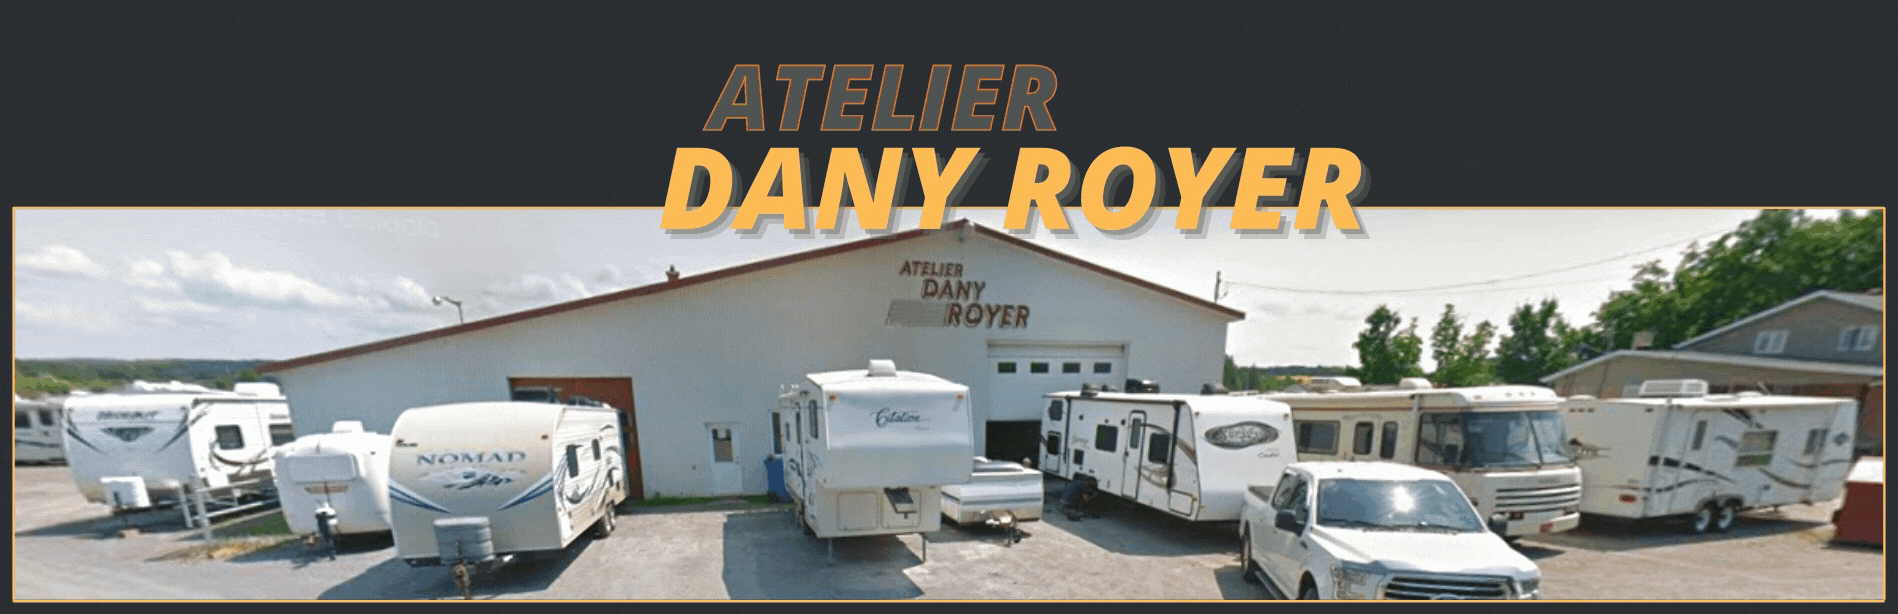 Atelier Dany Royer 1